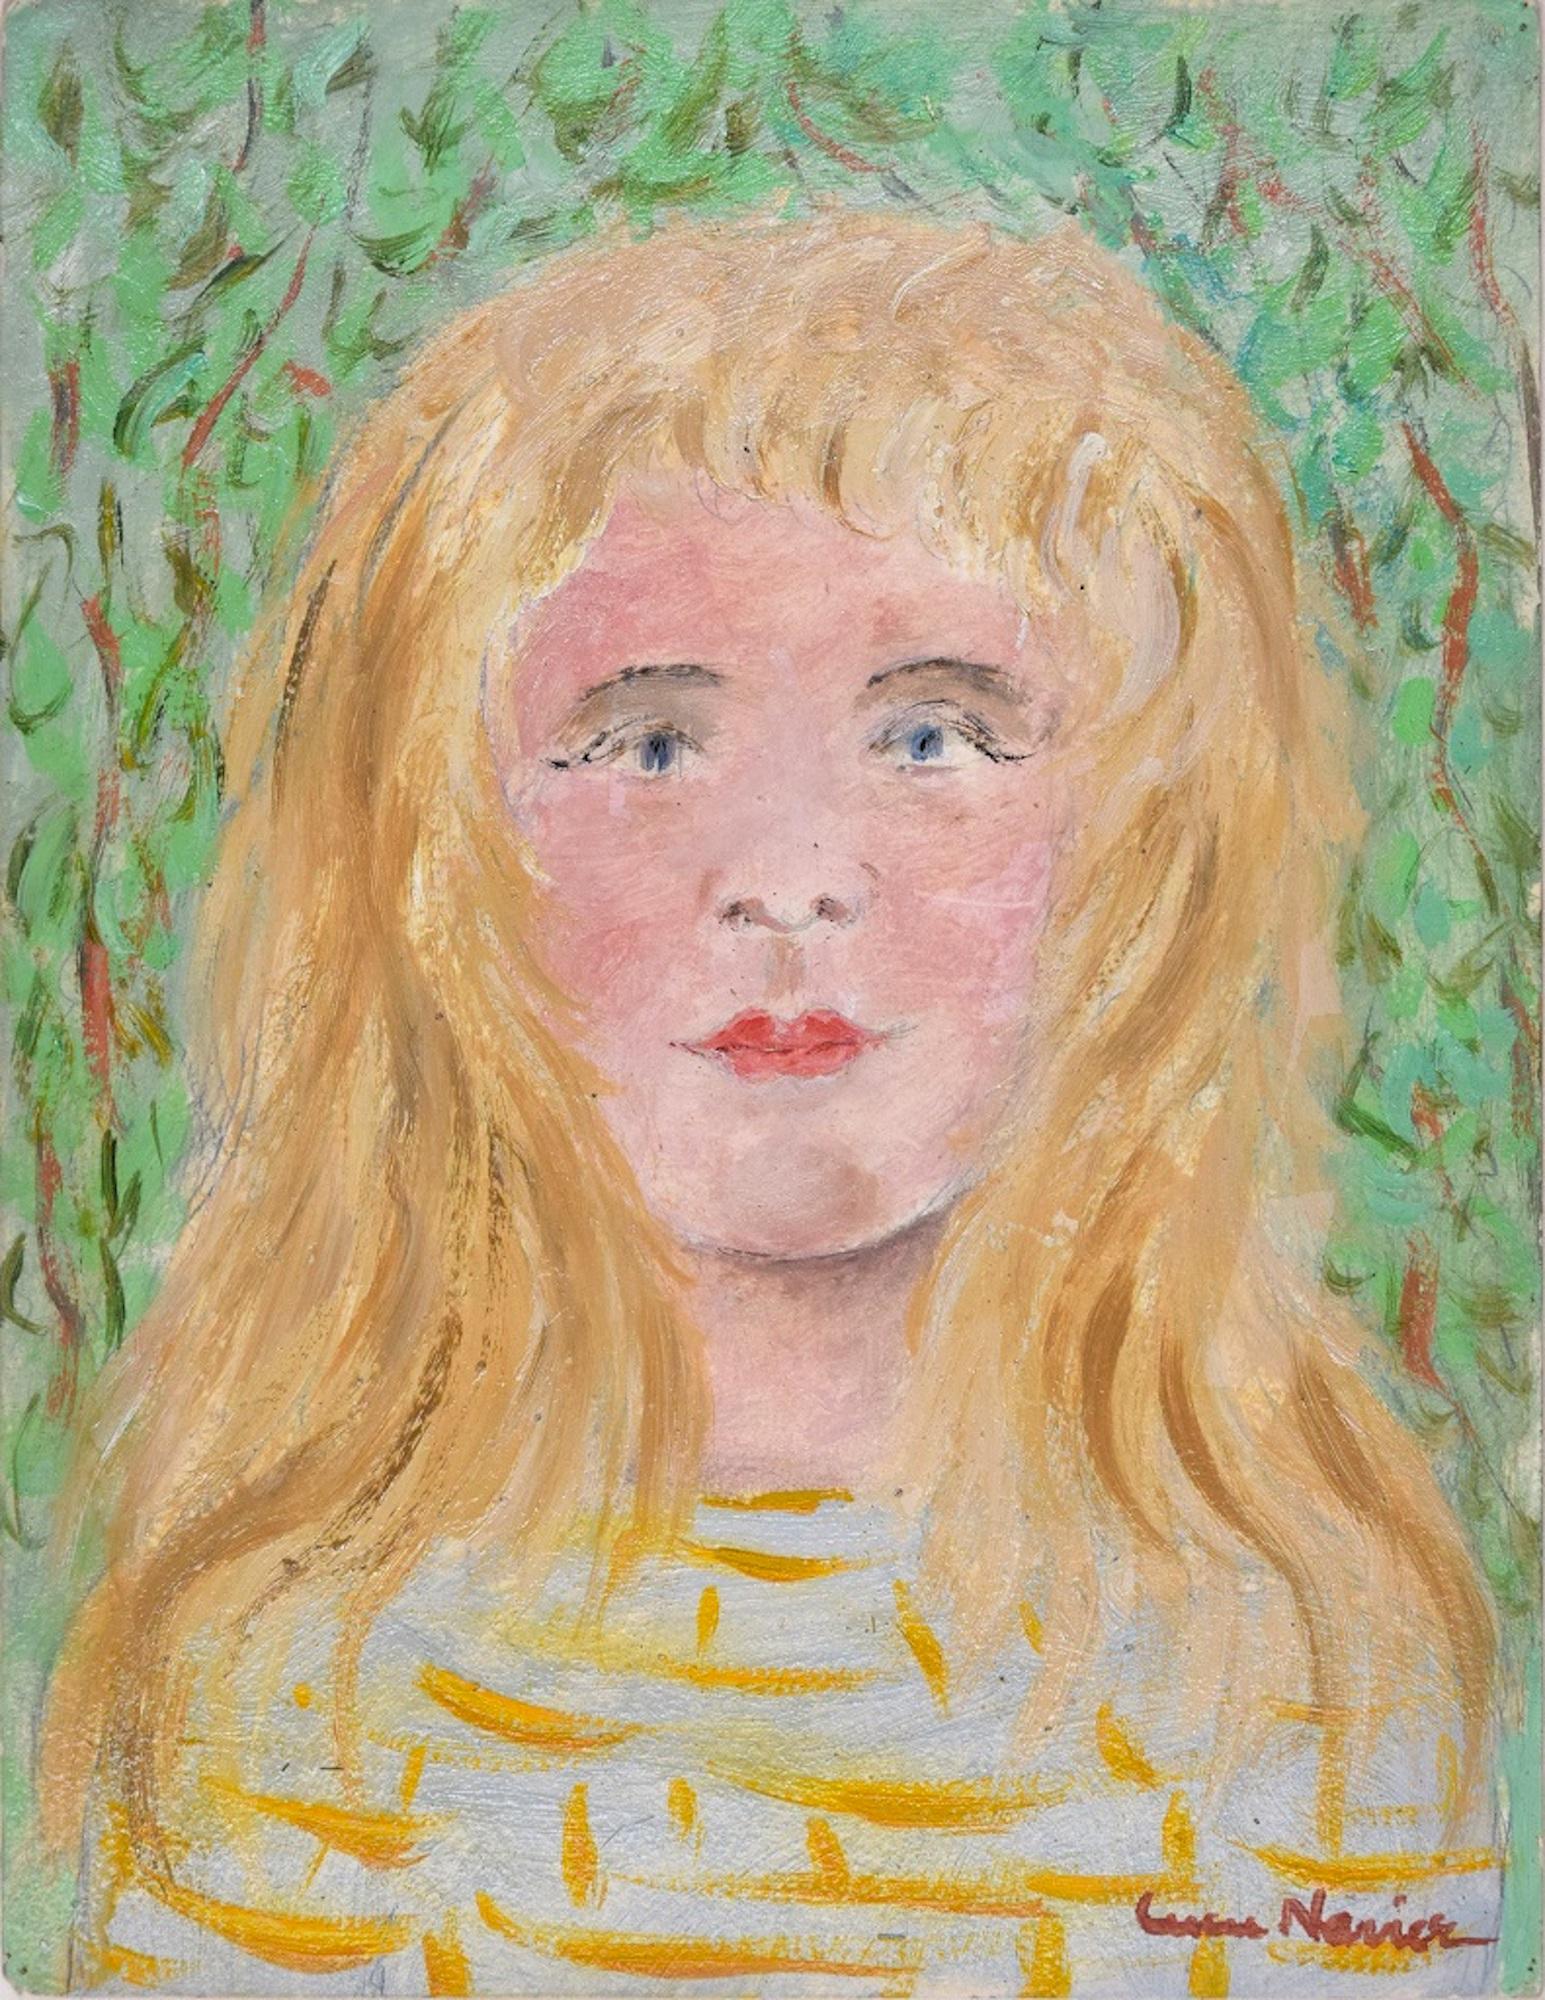 Jeune fille blonde est une peinture originale réalisée par Lucie Navier dans les années 1930.

Peinture à l'huile originale sur  carton.

Signé à la main par l'artiste dans le coin inférieur droit en rouge "Lucie Navier".

Très bonnes conditions.